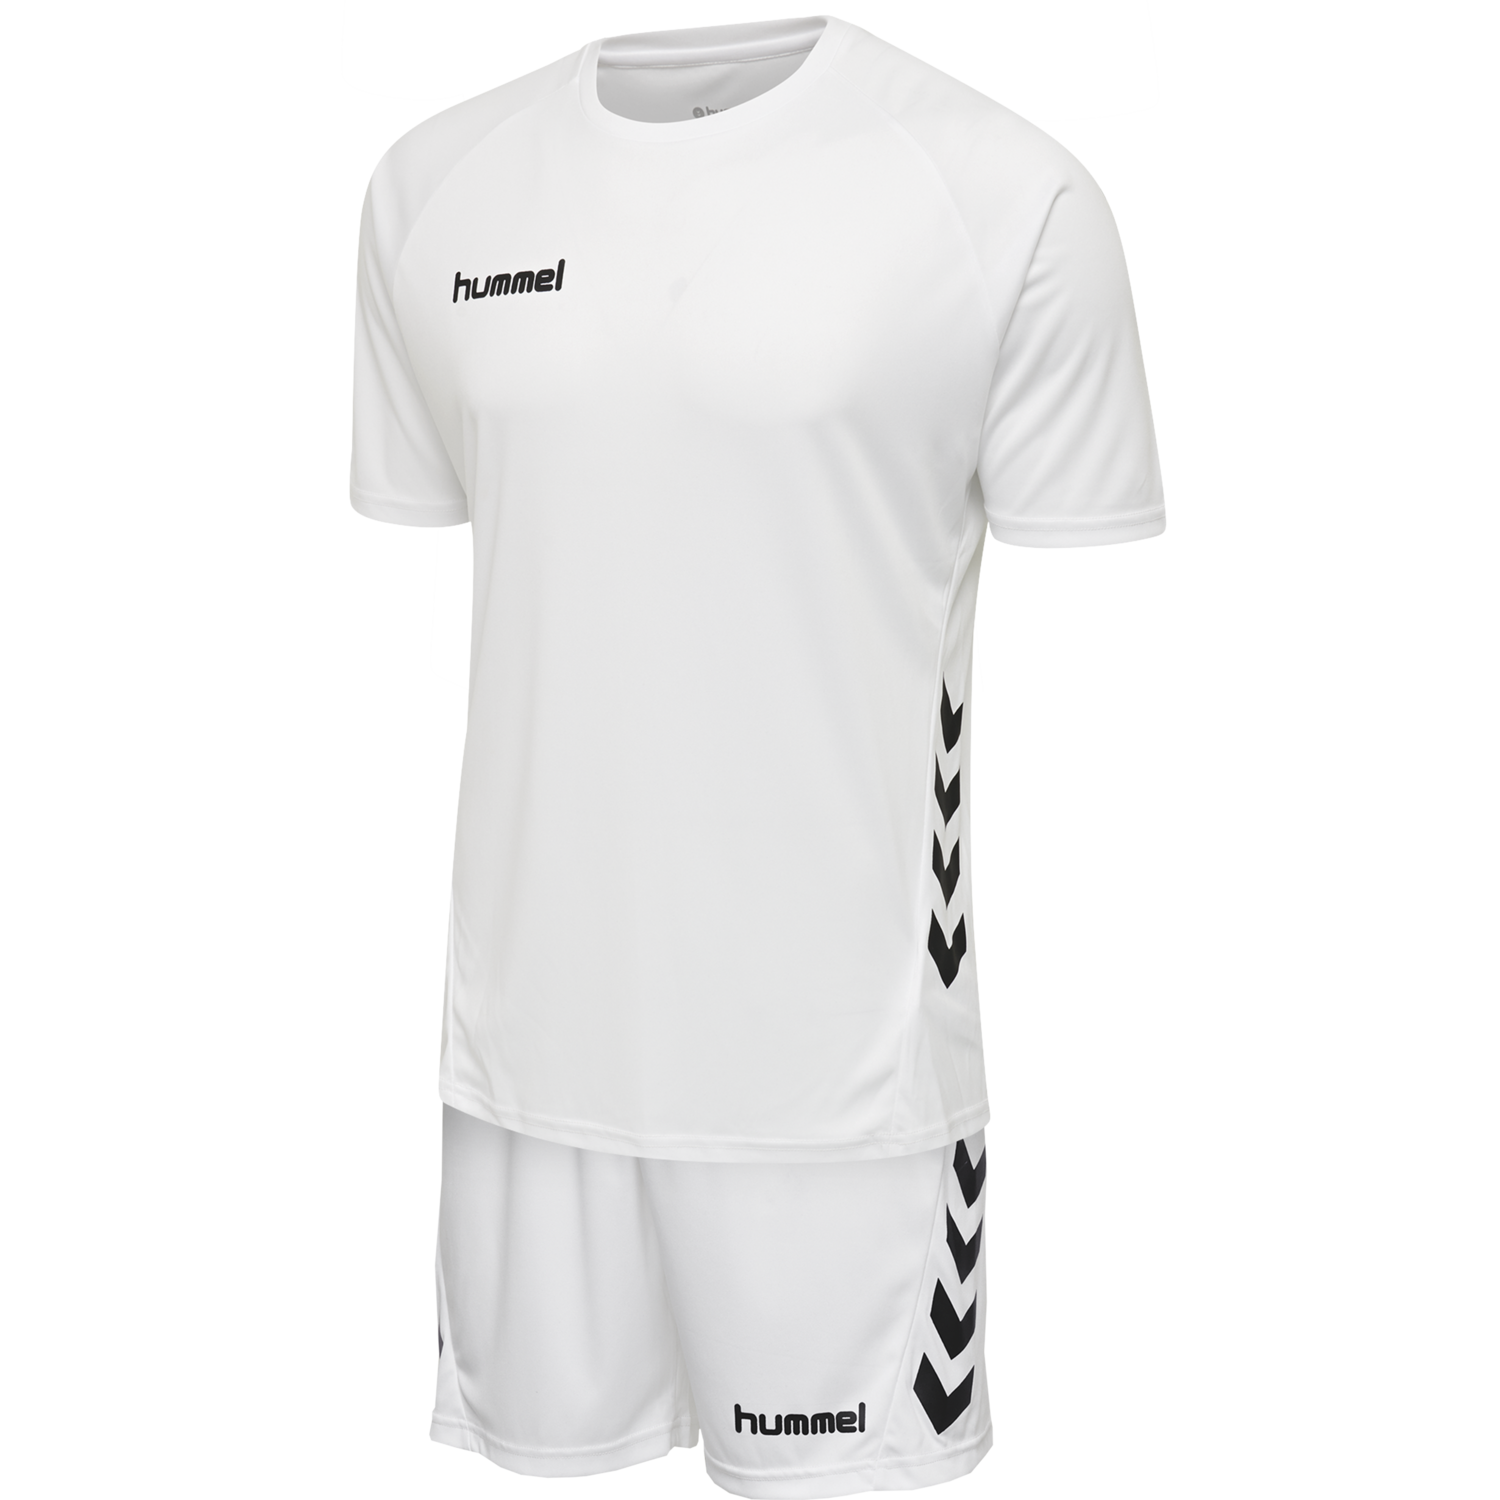 Details about   Hummel Football Soccer Women Ladies Training Sports Short Sleeve SS Jersey Shirt 